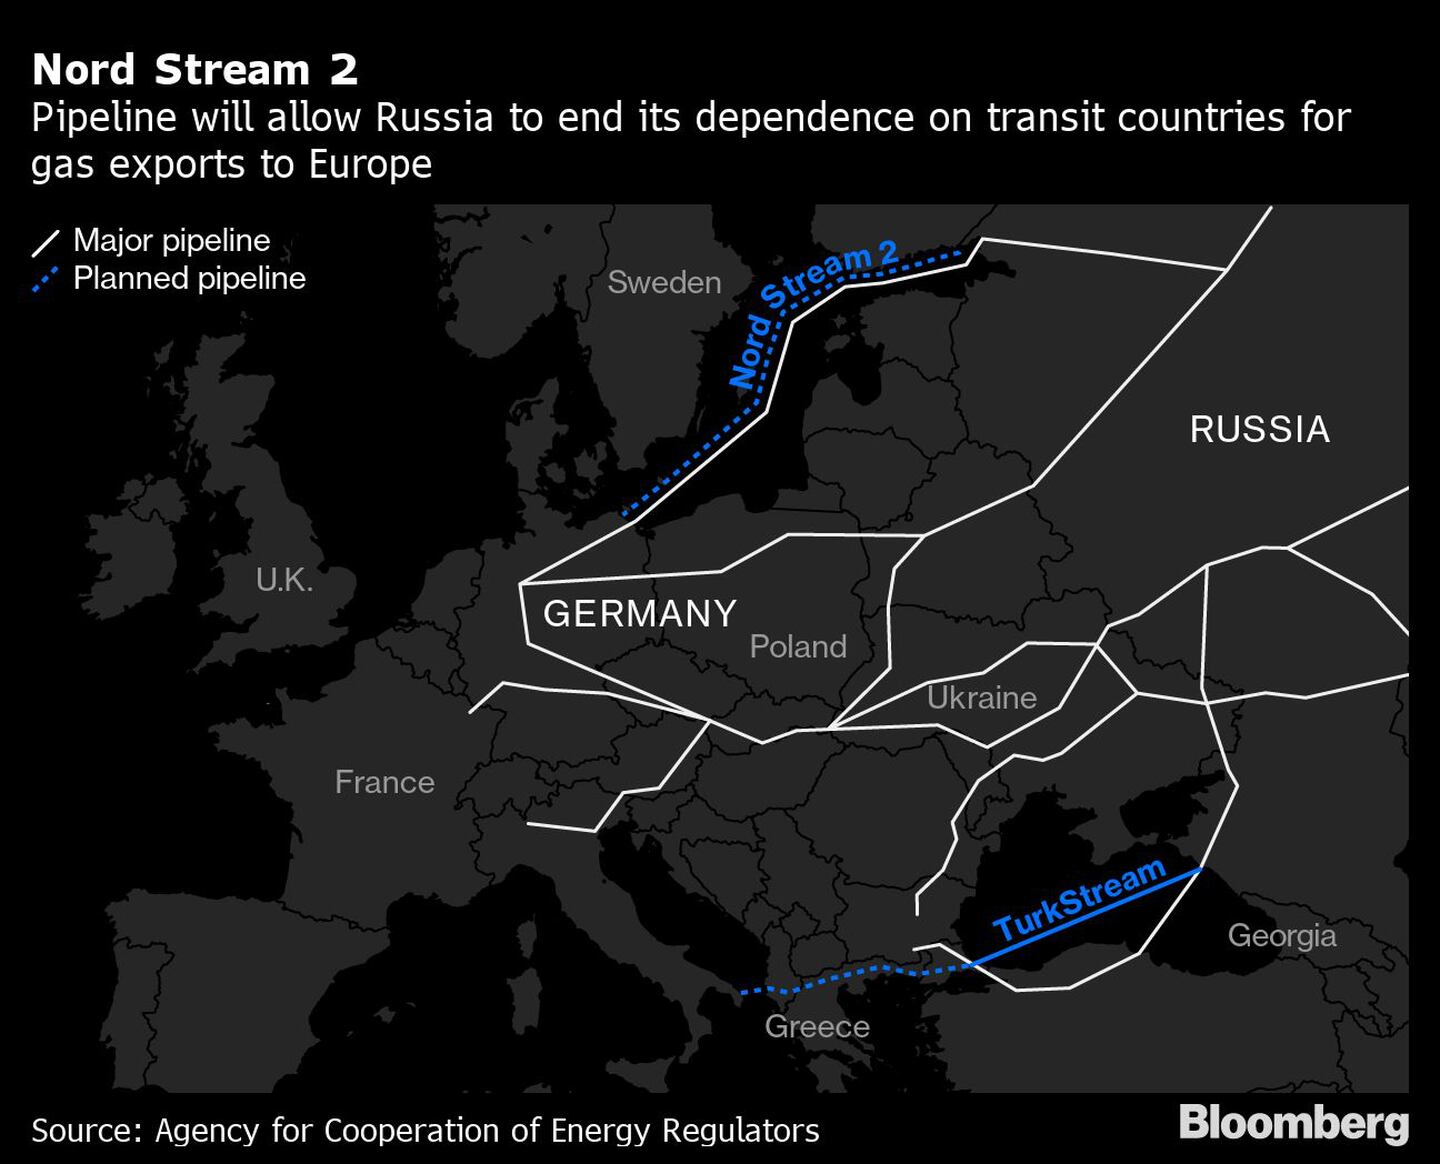 El gasoducto permitirá a Rusia acabar con su independencia de los países de tránsito para la exportación de gas a Europadfd